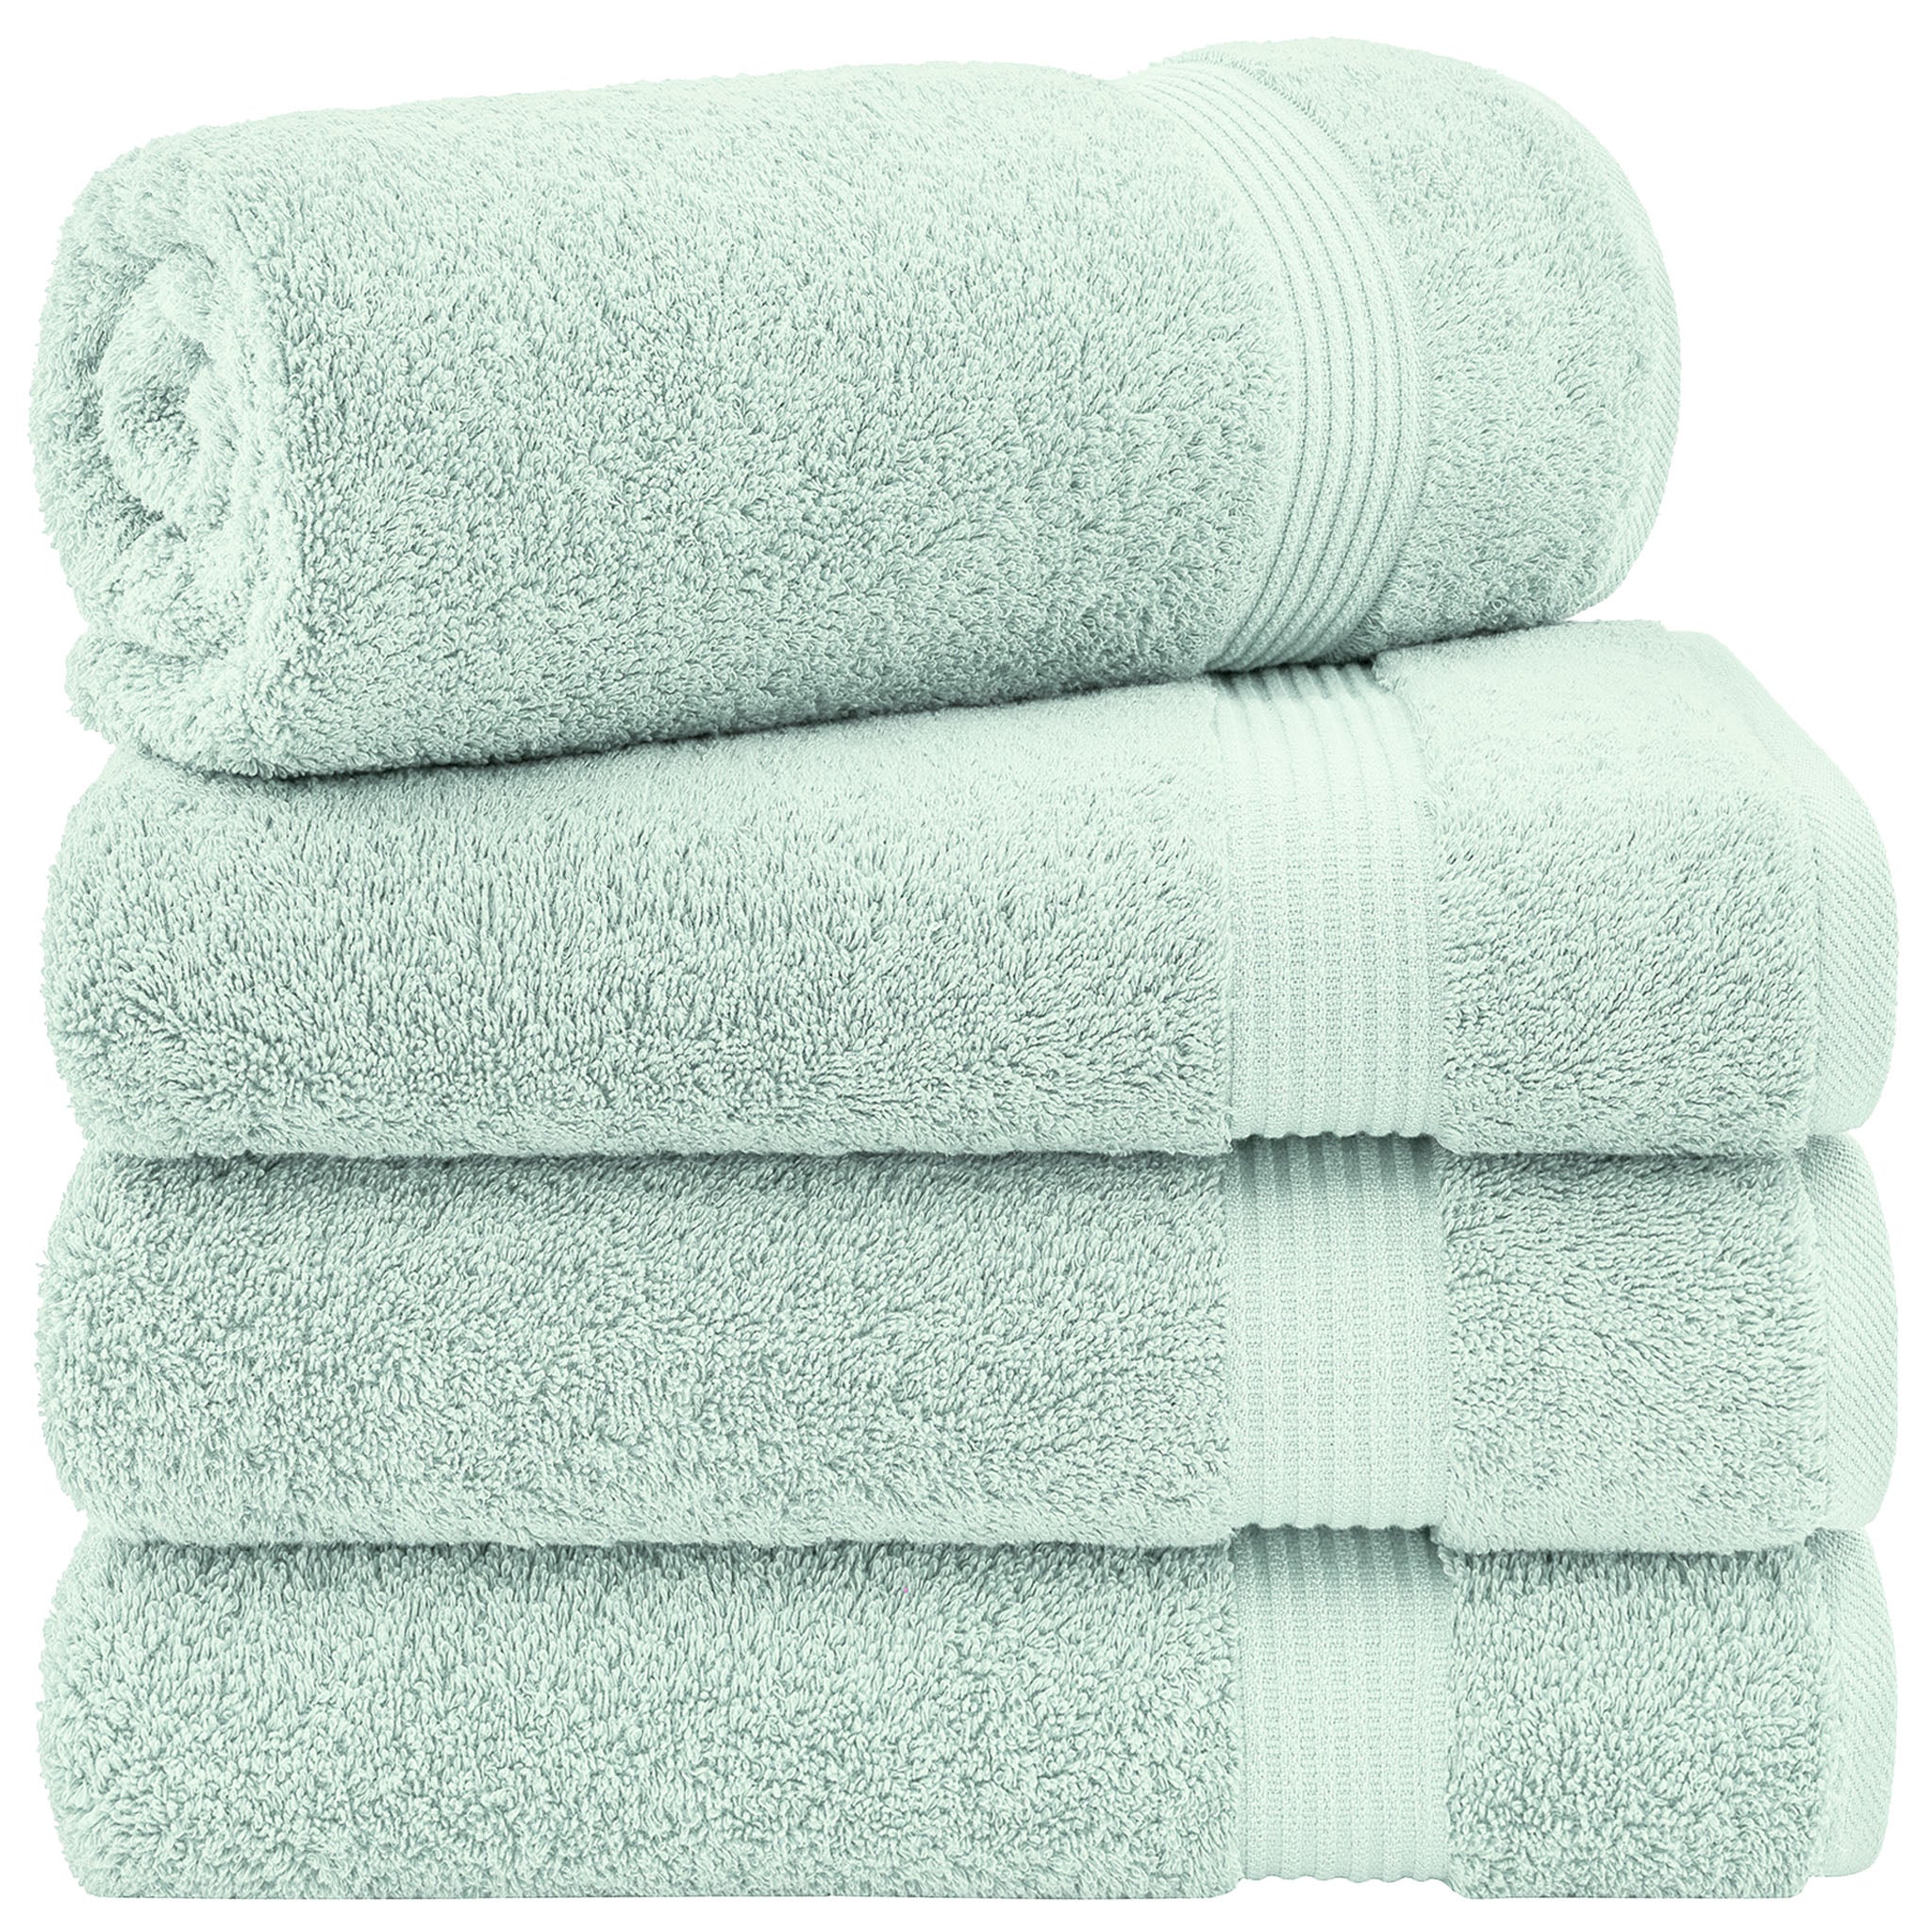 American Soft Linen Bekos 100% Cotton Turkish Towels, 4 Piece Bath Towel Set -mint-01